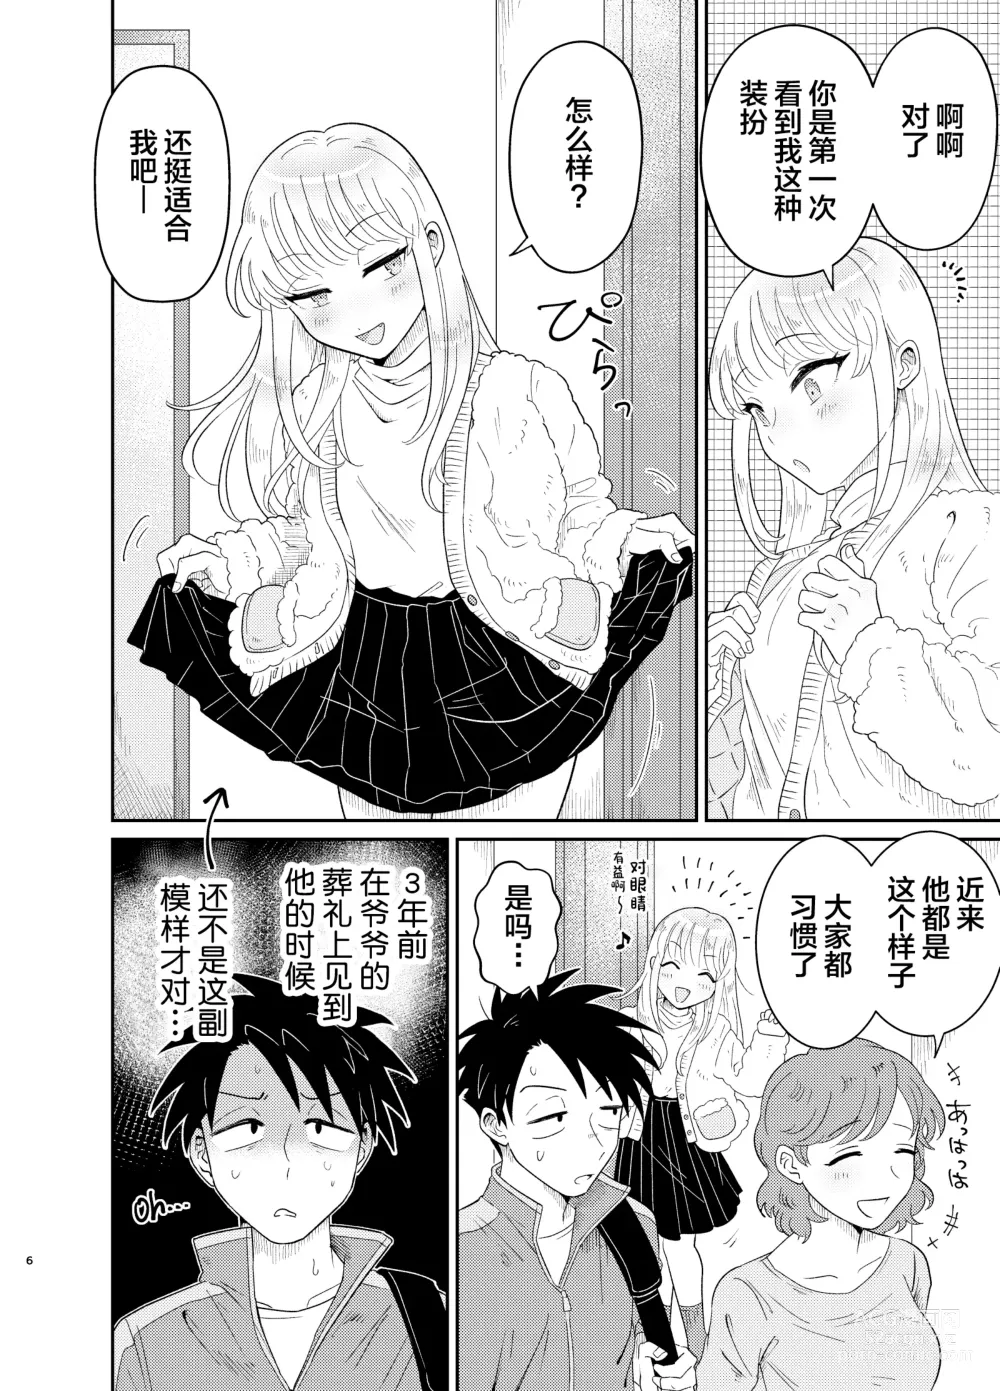 Page 6 of doujinshi Mechakucha Kawaikute Ecchi na Itoko wa Suki desu ka?